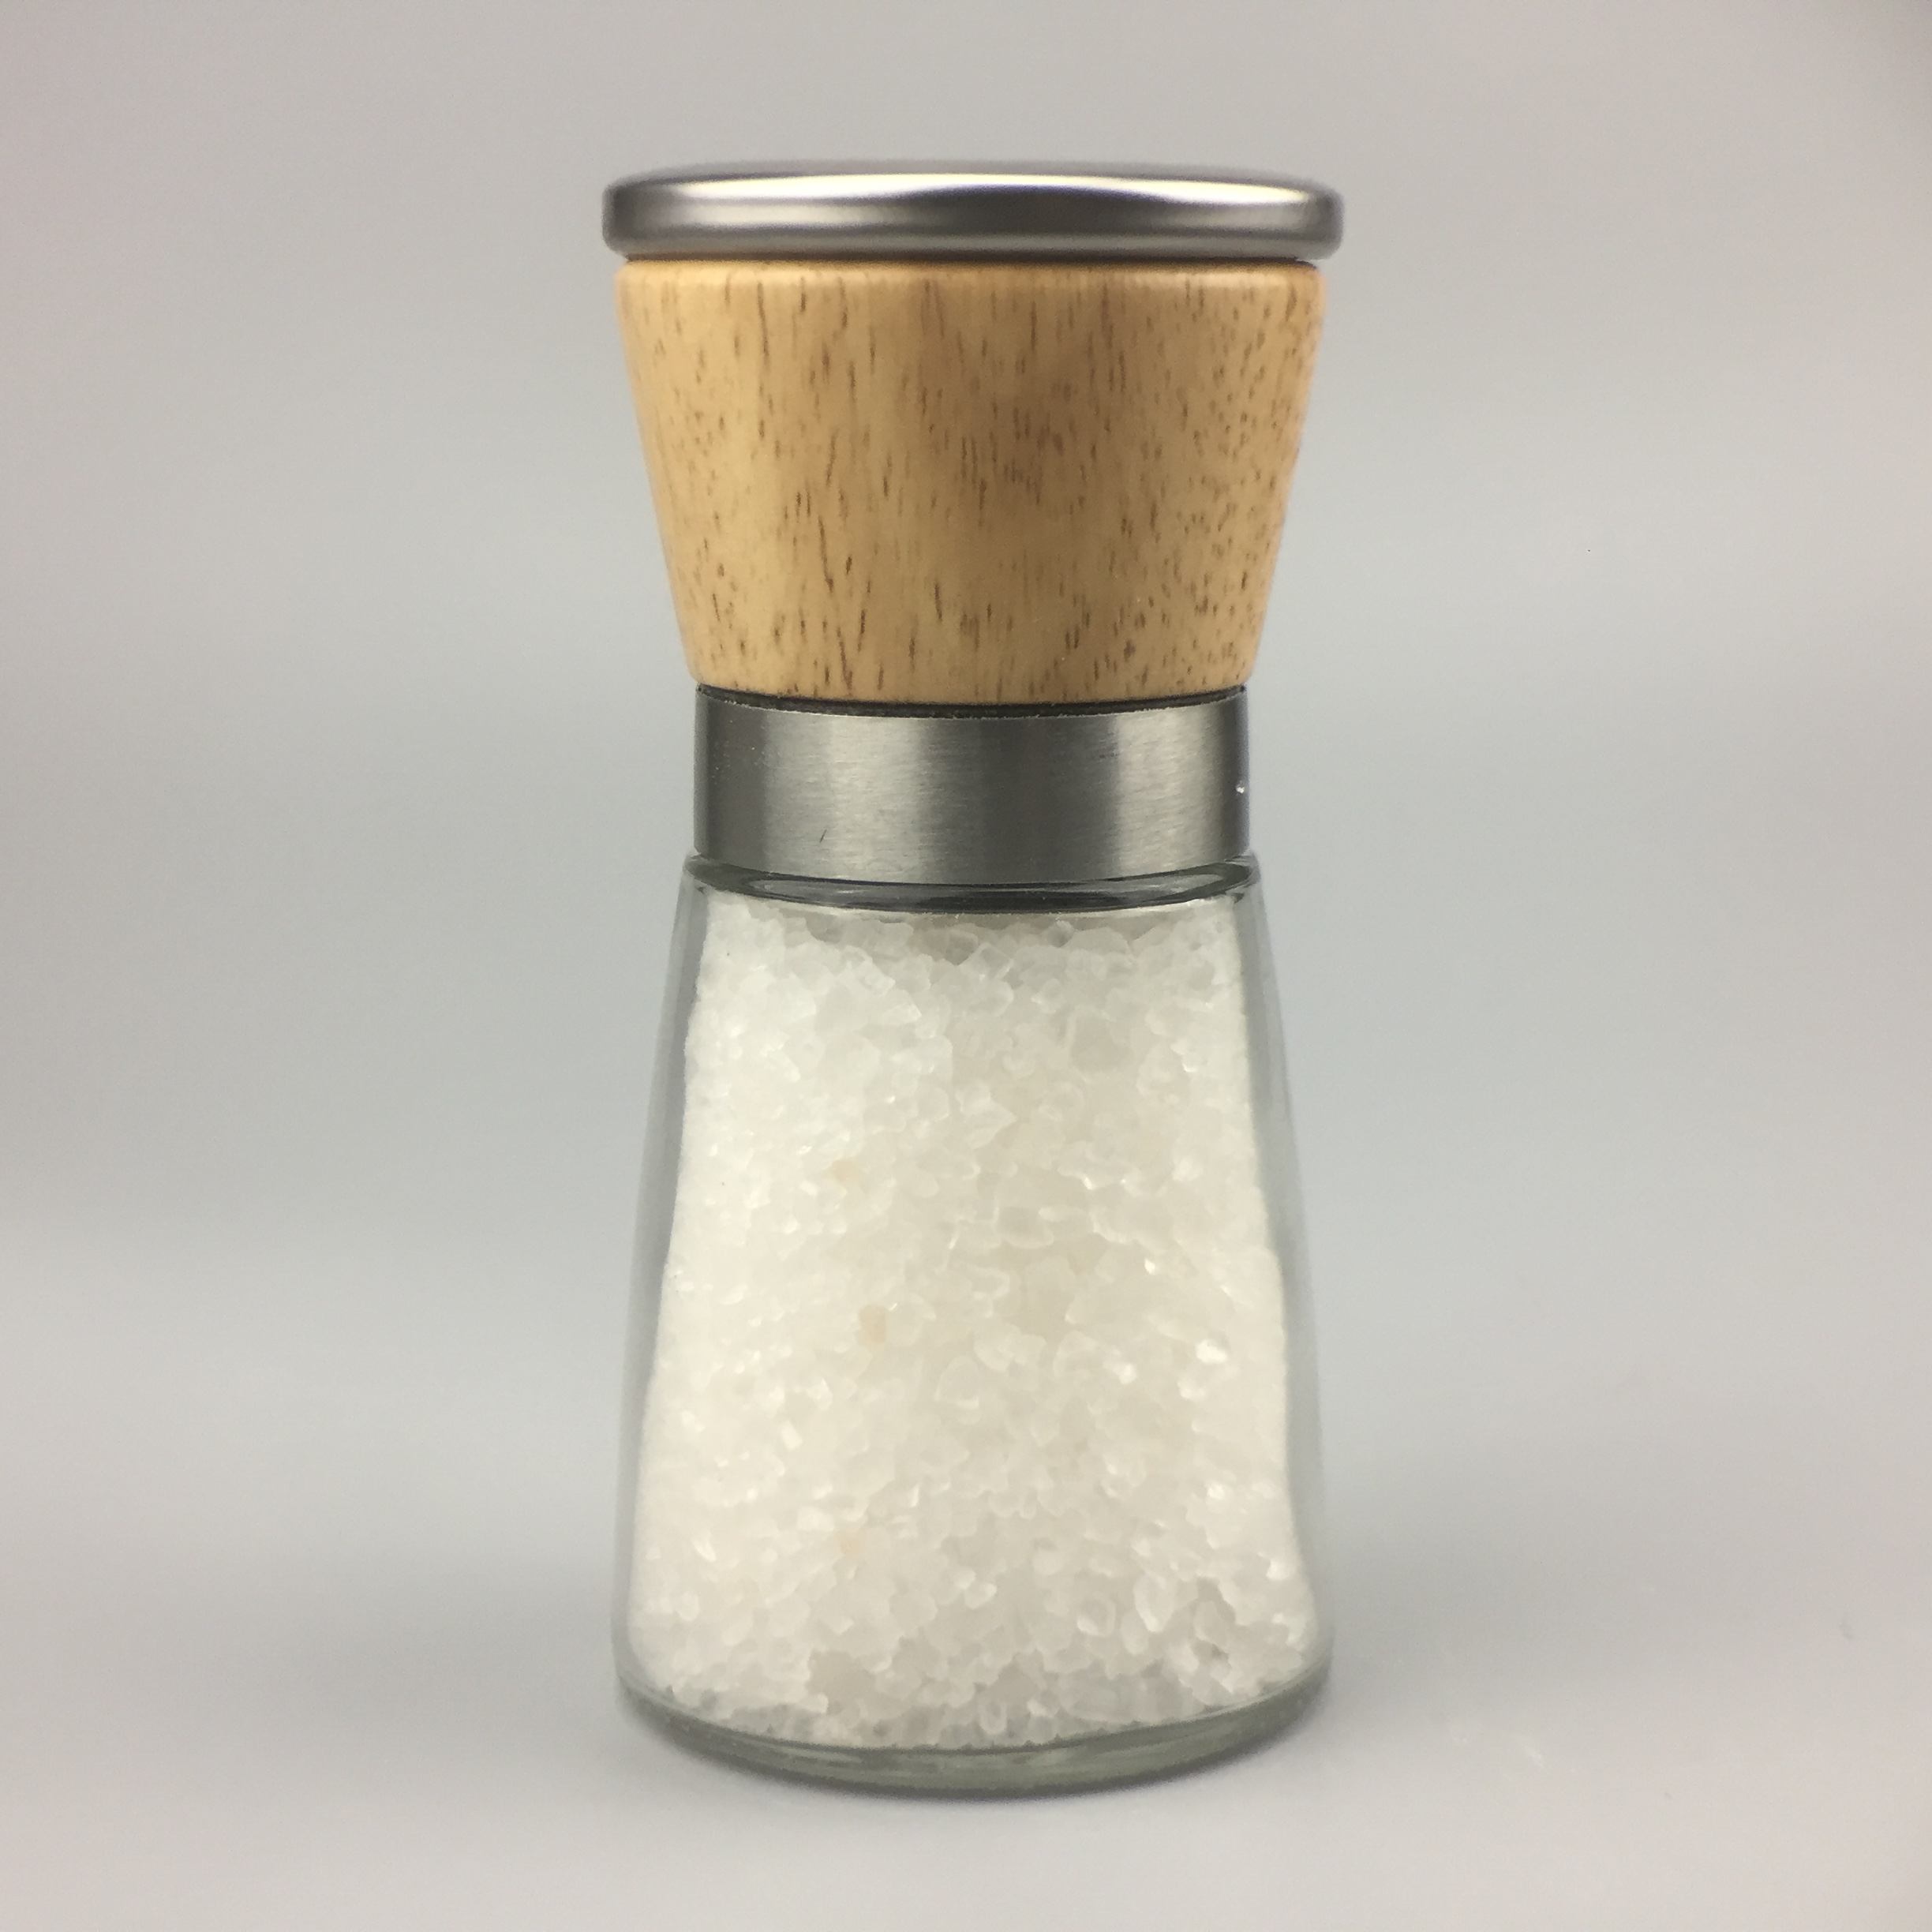 Salzm%C3%BChle mit Keramik-Mahlwerk gef%C3%BCllt mit Halitsalz